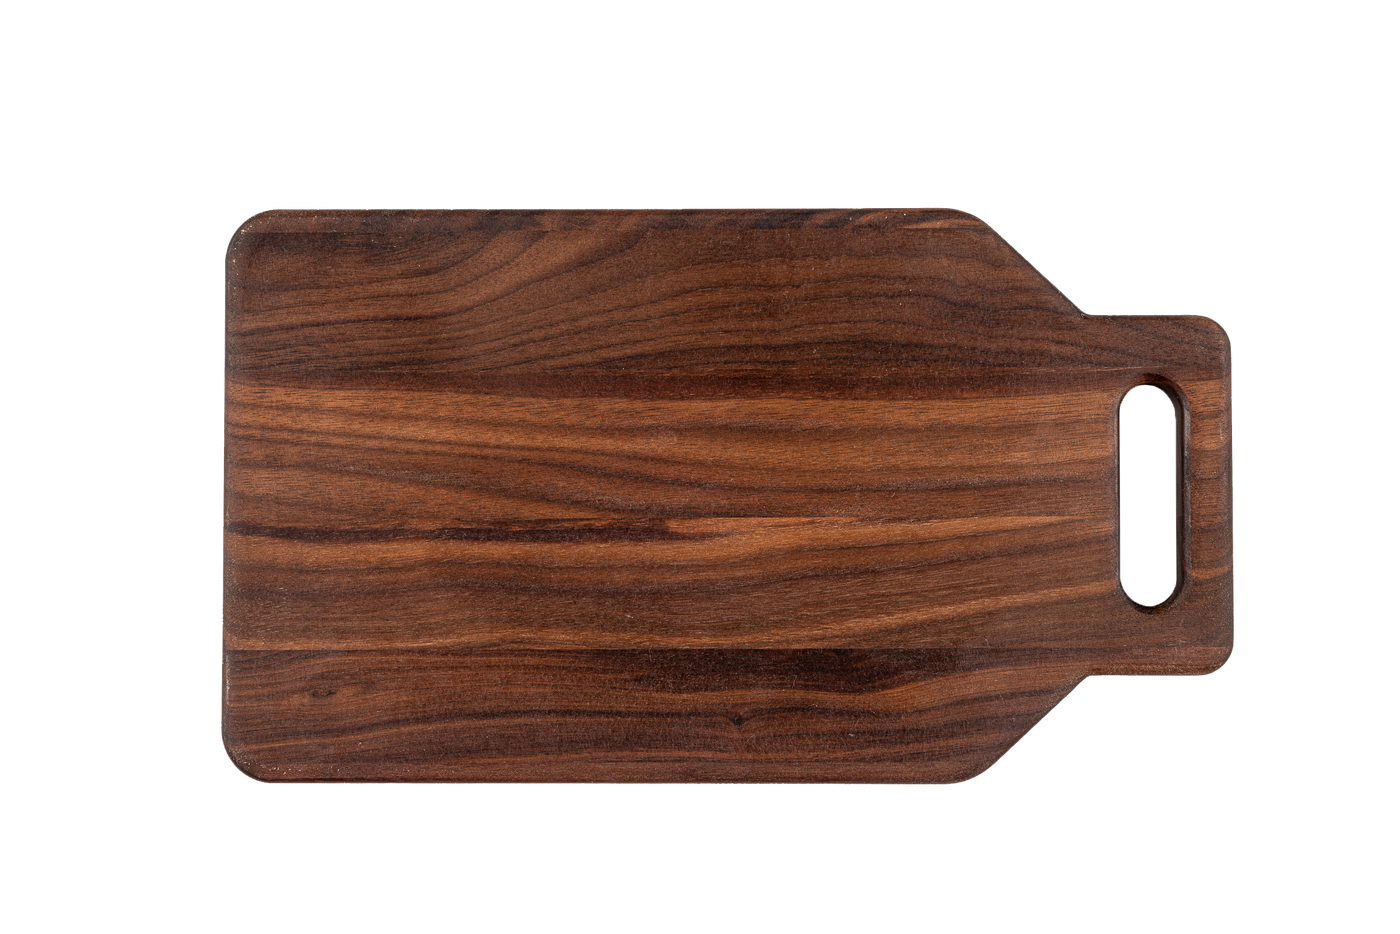 Walnut - IHD14 - Cutting Board with Handle 14"x8"x3/4"